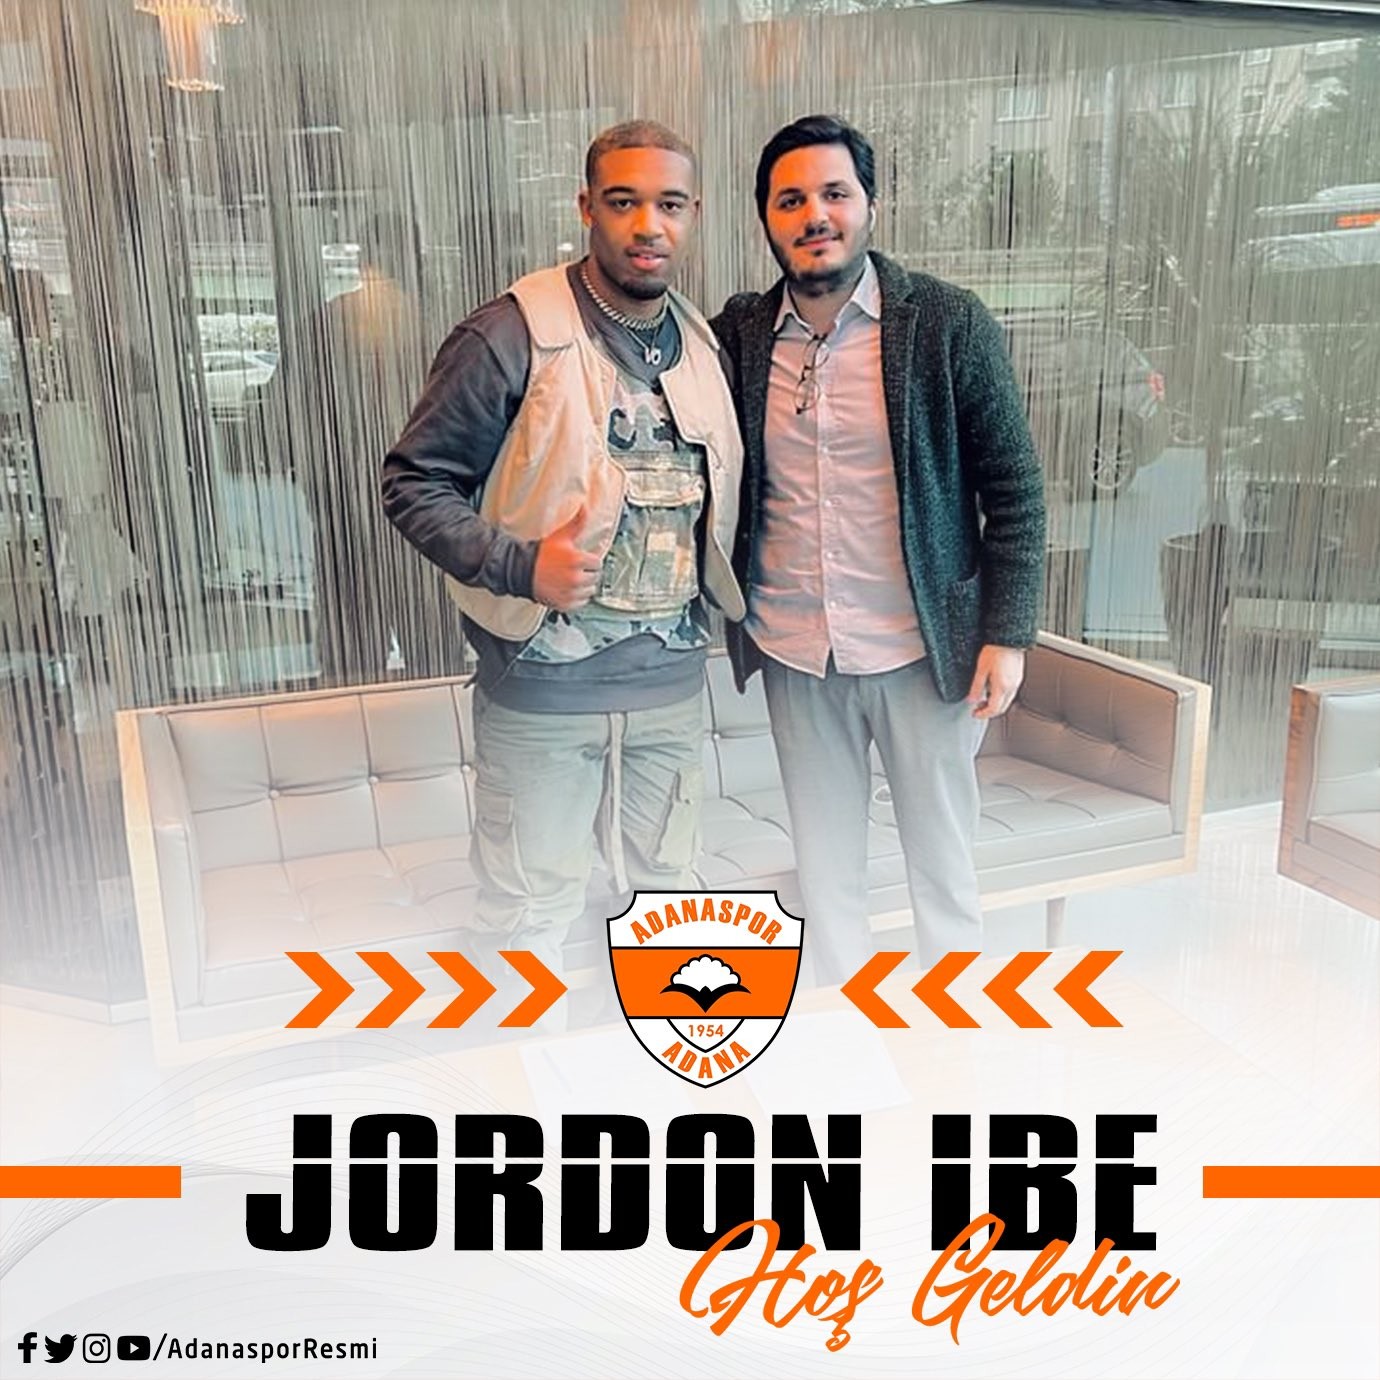 Adanaspor, bir dönem Liverpool forması da giyen Jordon Ibe ile 3.5 yıllık sözleşme imzalandığını açıkladı. #adana